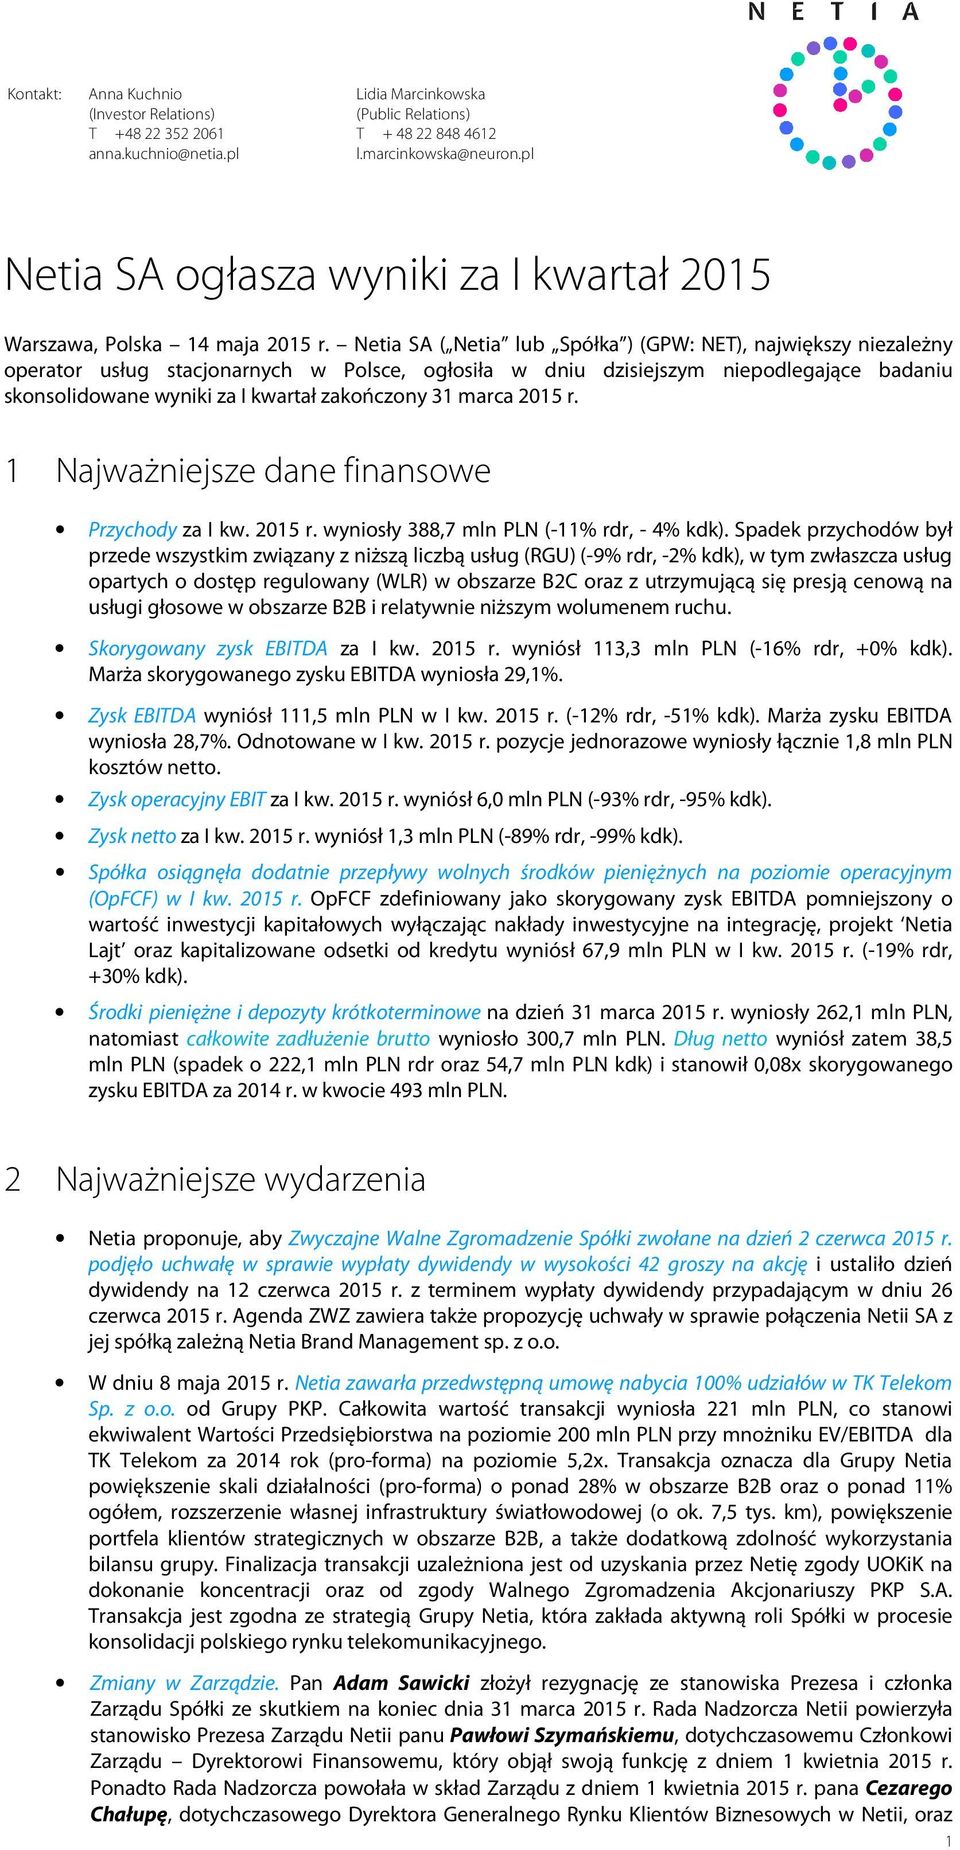 Netia SA ( Netia lub Spółka ) (GPW: NET), największy niezależny operator usług stacjonarnych w Polsce, ogłosiła w dniu dzisiejszym niepodlegające badaniu skonsolidowane wyniki za I kwartał zakończony